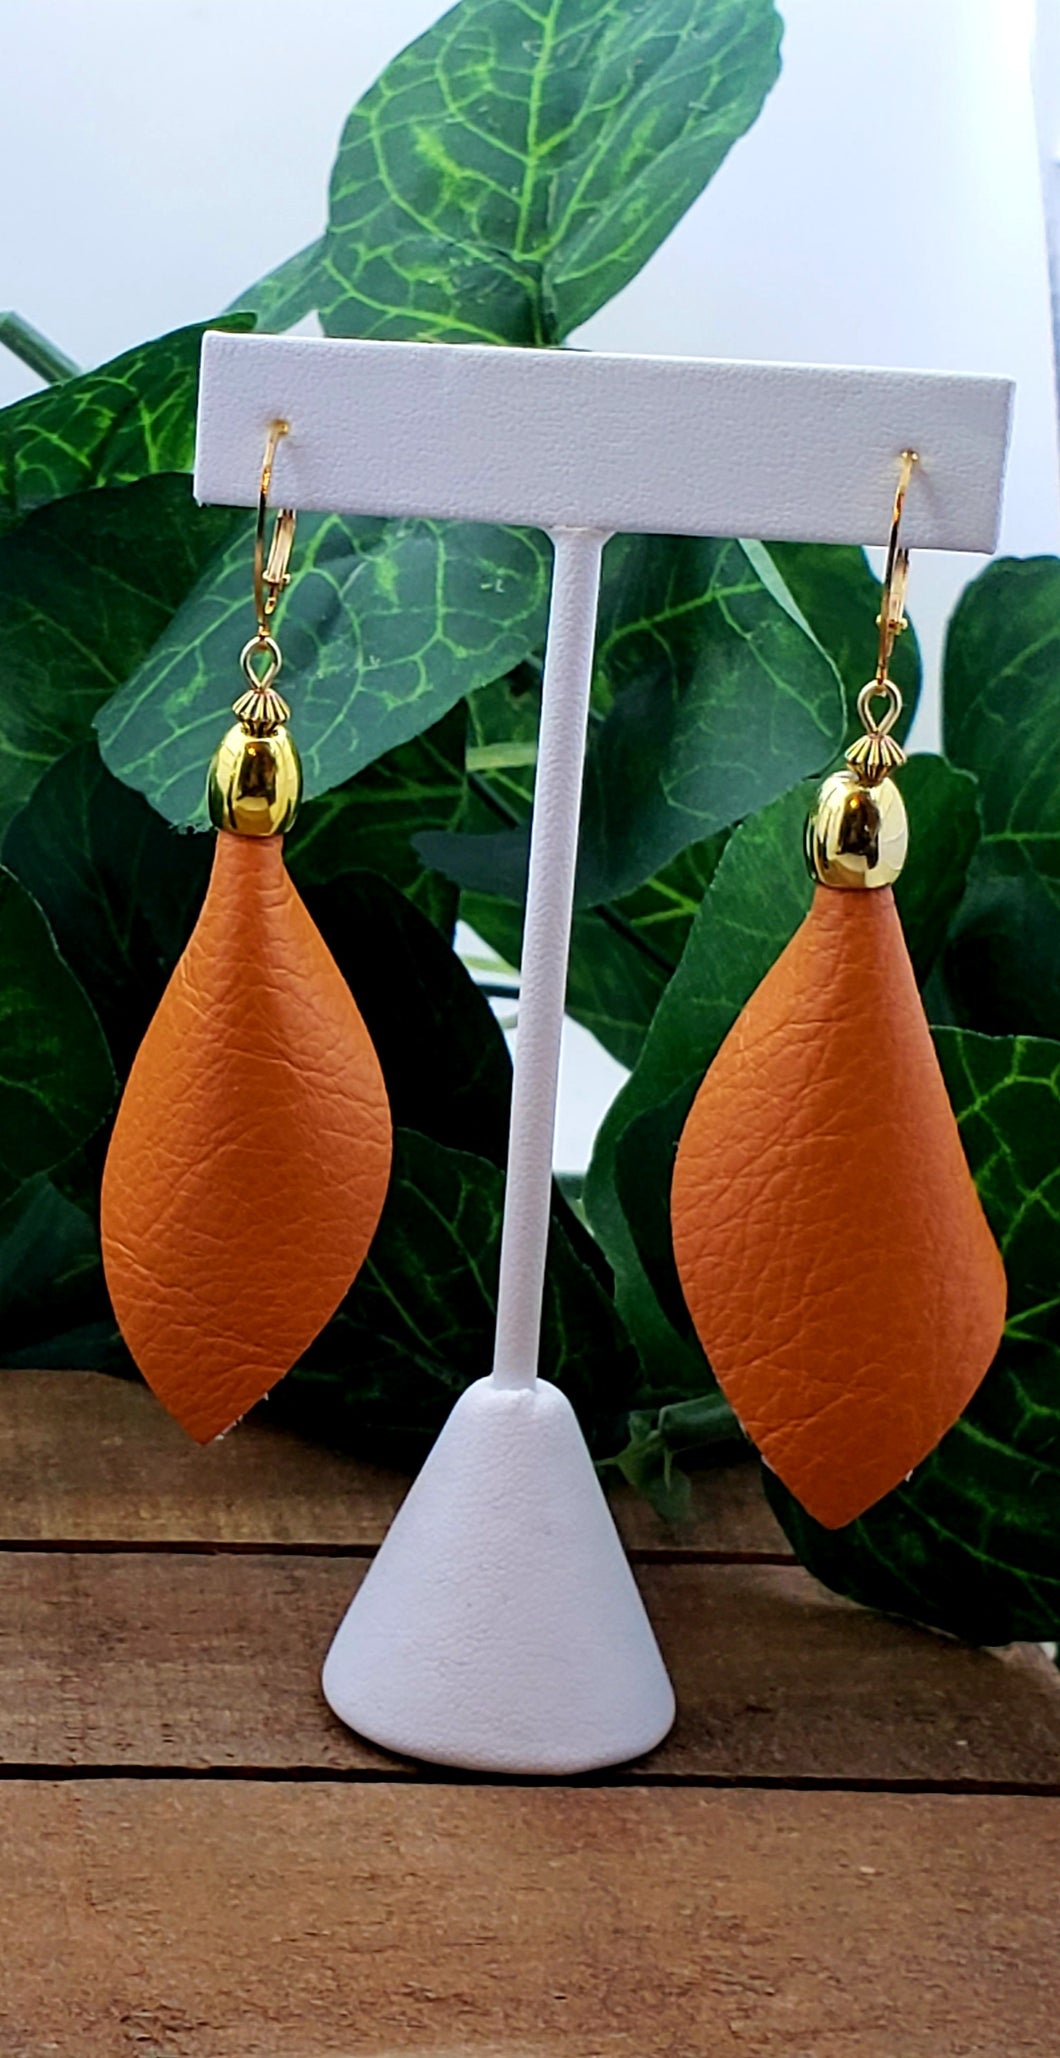 3D Fold Leather Earrings - Orange